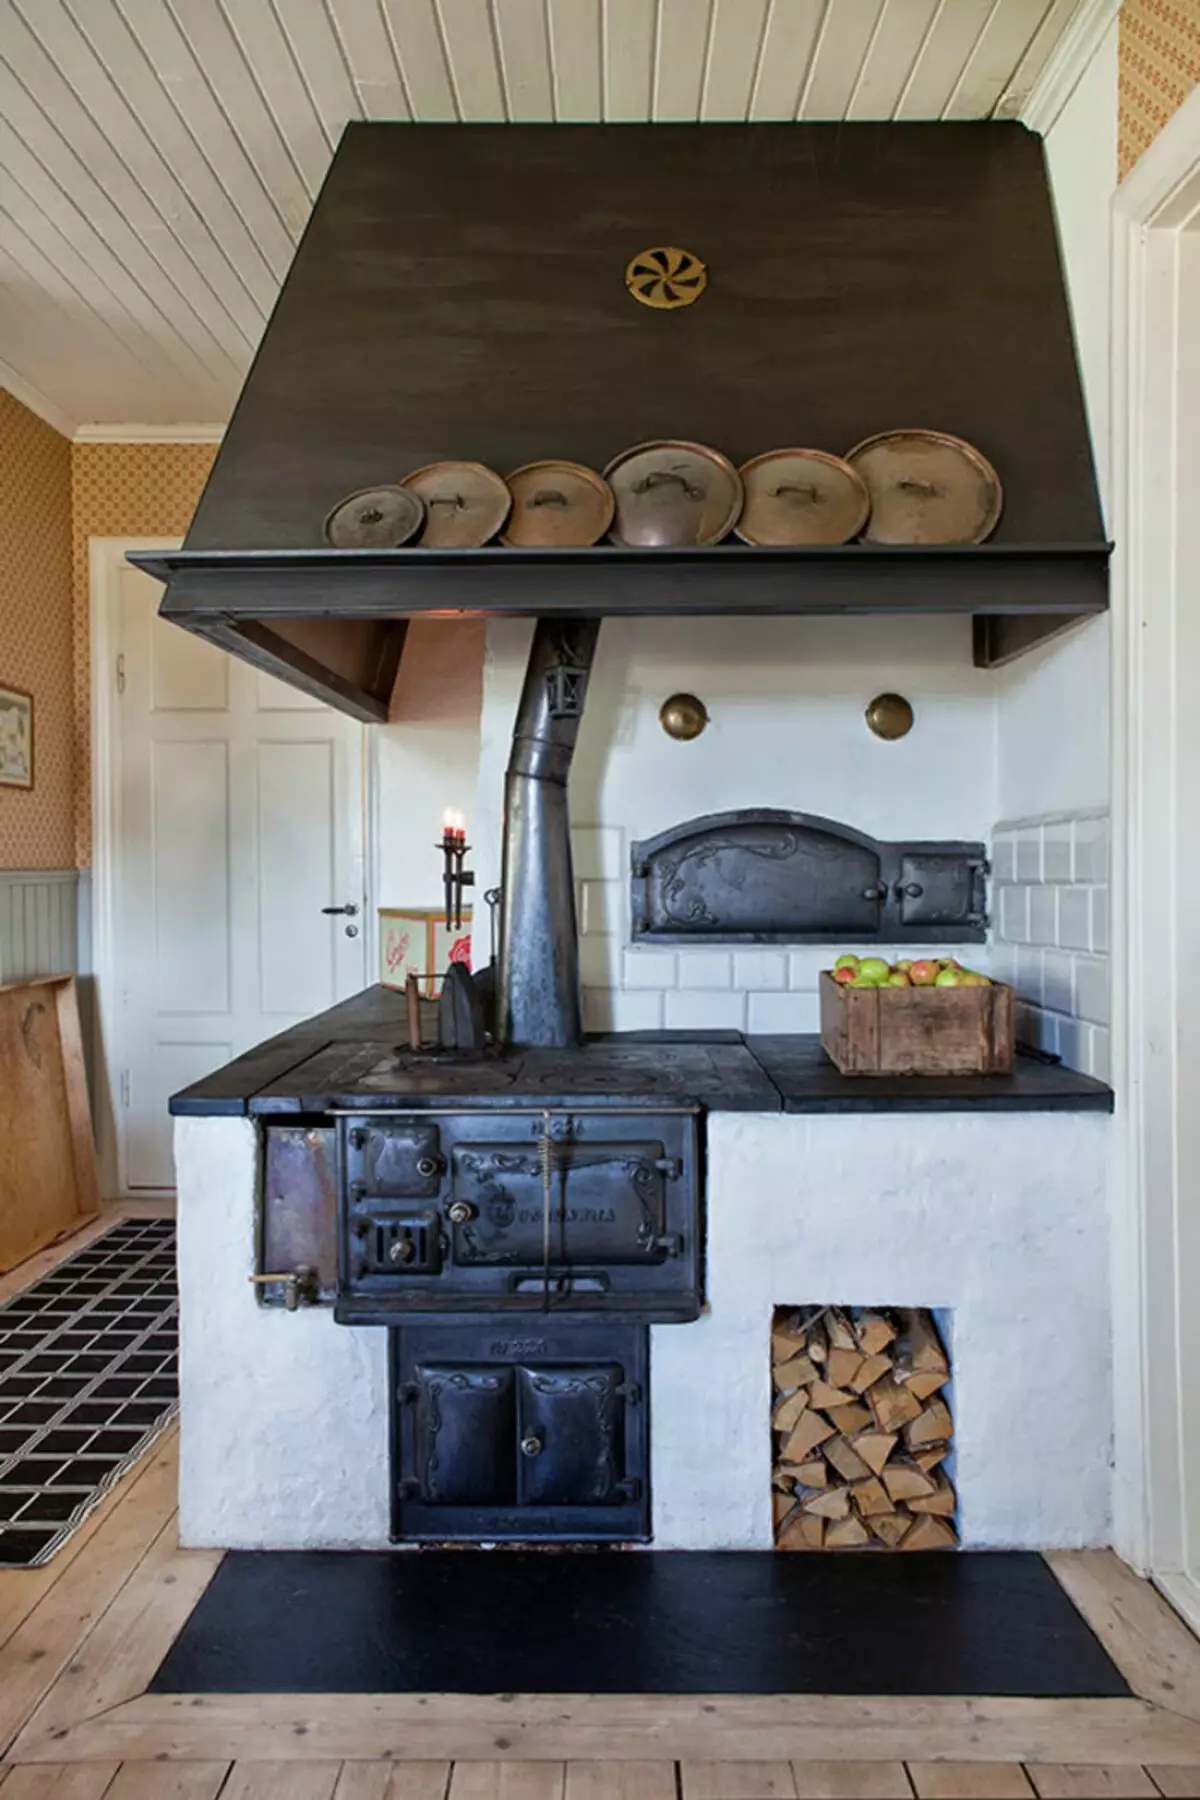 Cociña nunha casa rústica (68 fotos): ideas de deseño de interiores nunha antiga casa rural cunha cociña. Arreglo e decoración ecolóxica da cociña na aldea 9457_27